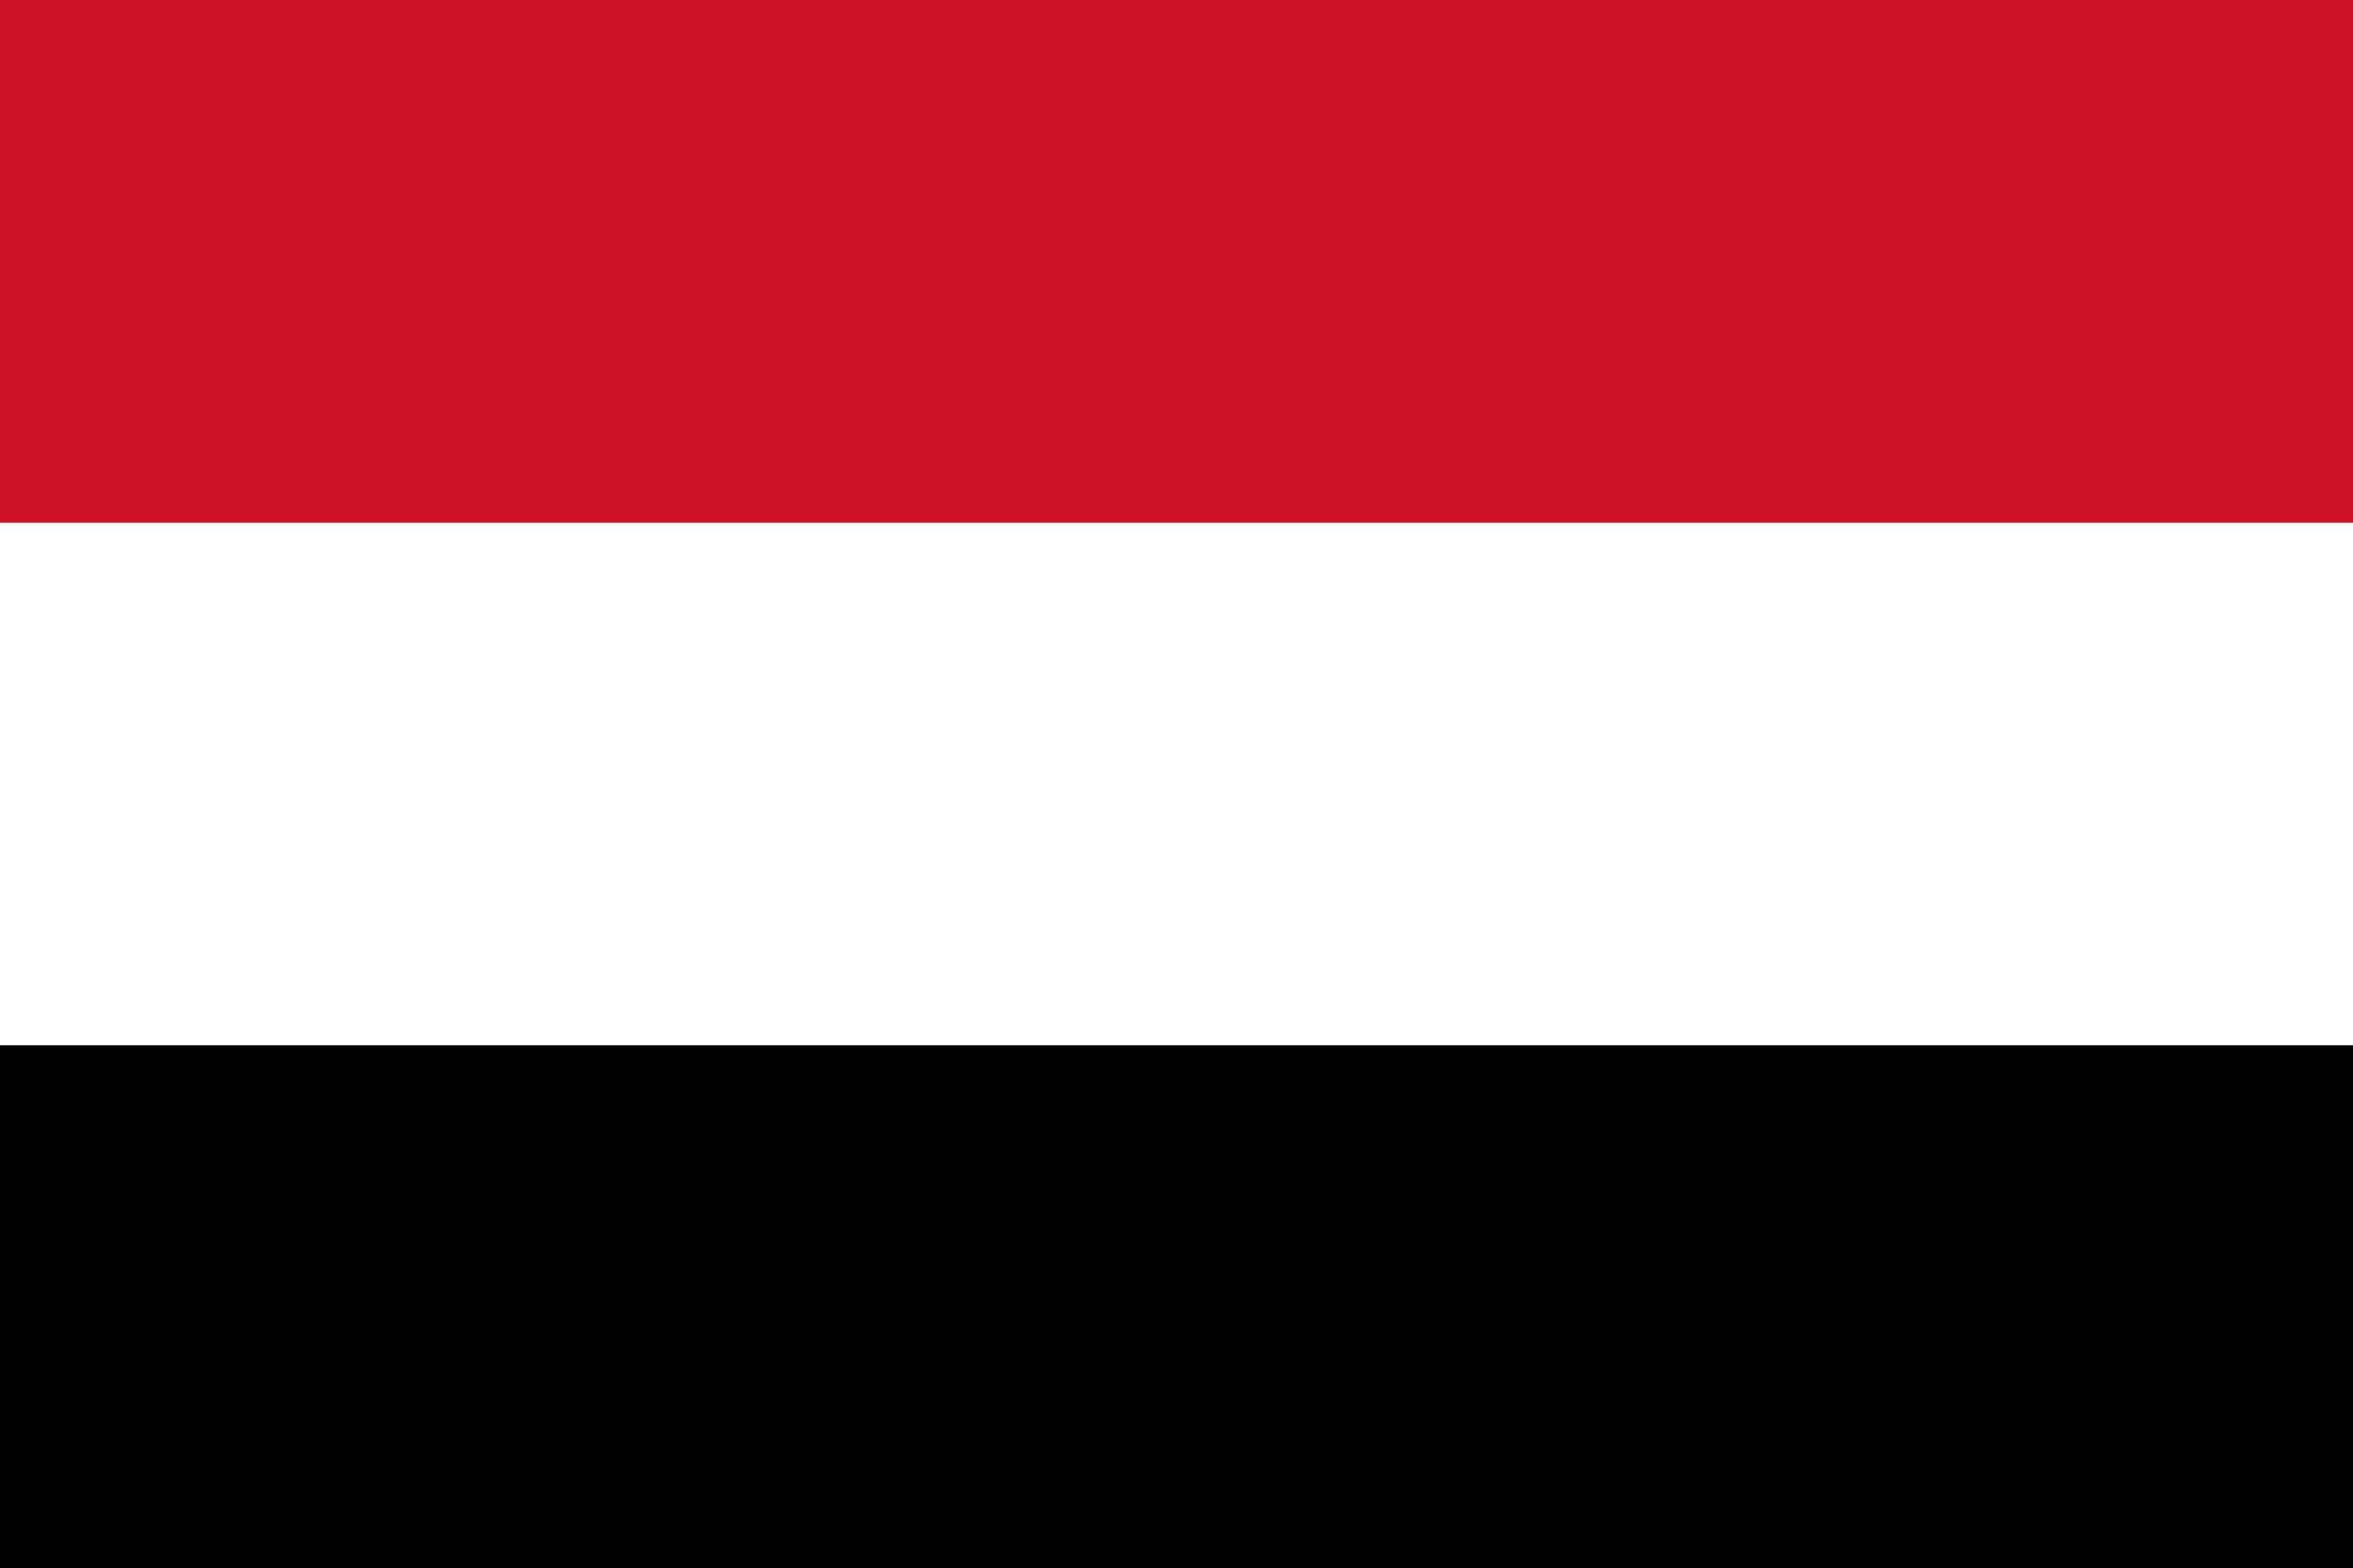 Yemen Flag Vector - Free Download